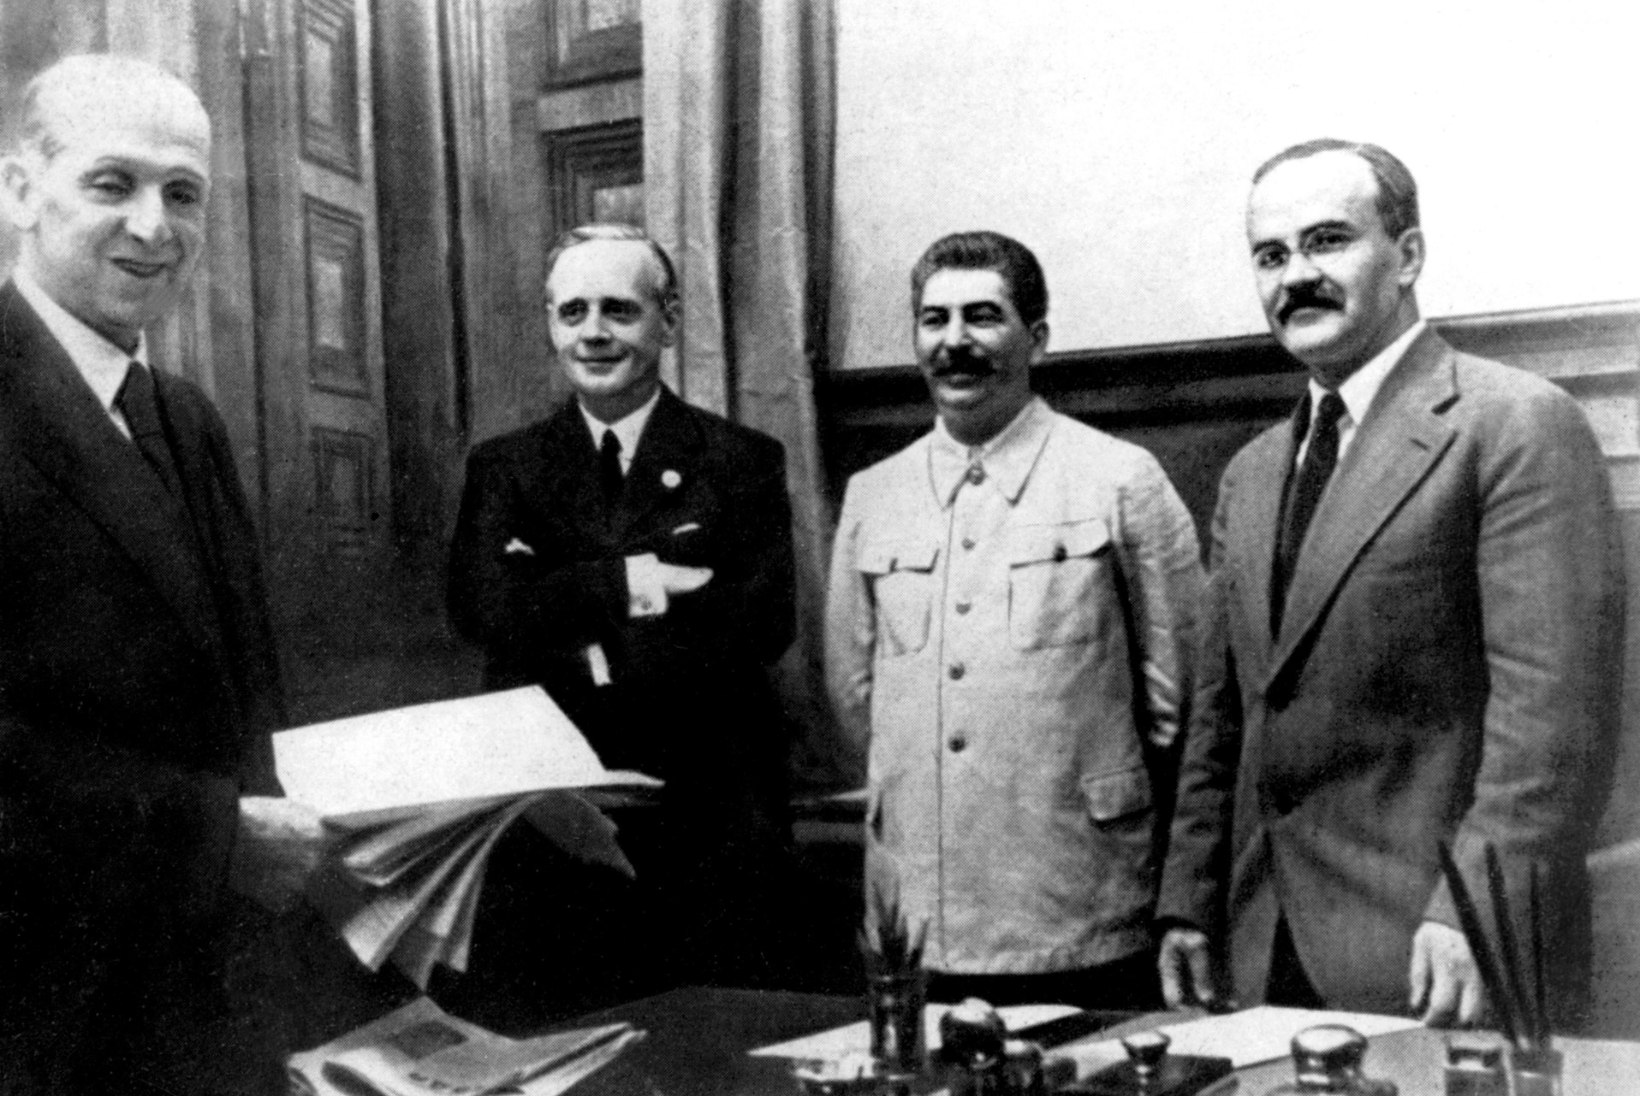 Vene välisluure direktor: Nõukogude Liit oli sunnitud Saksamaaga mittekalleletungilepingu sõlmima